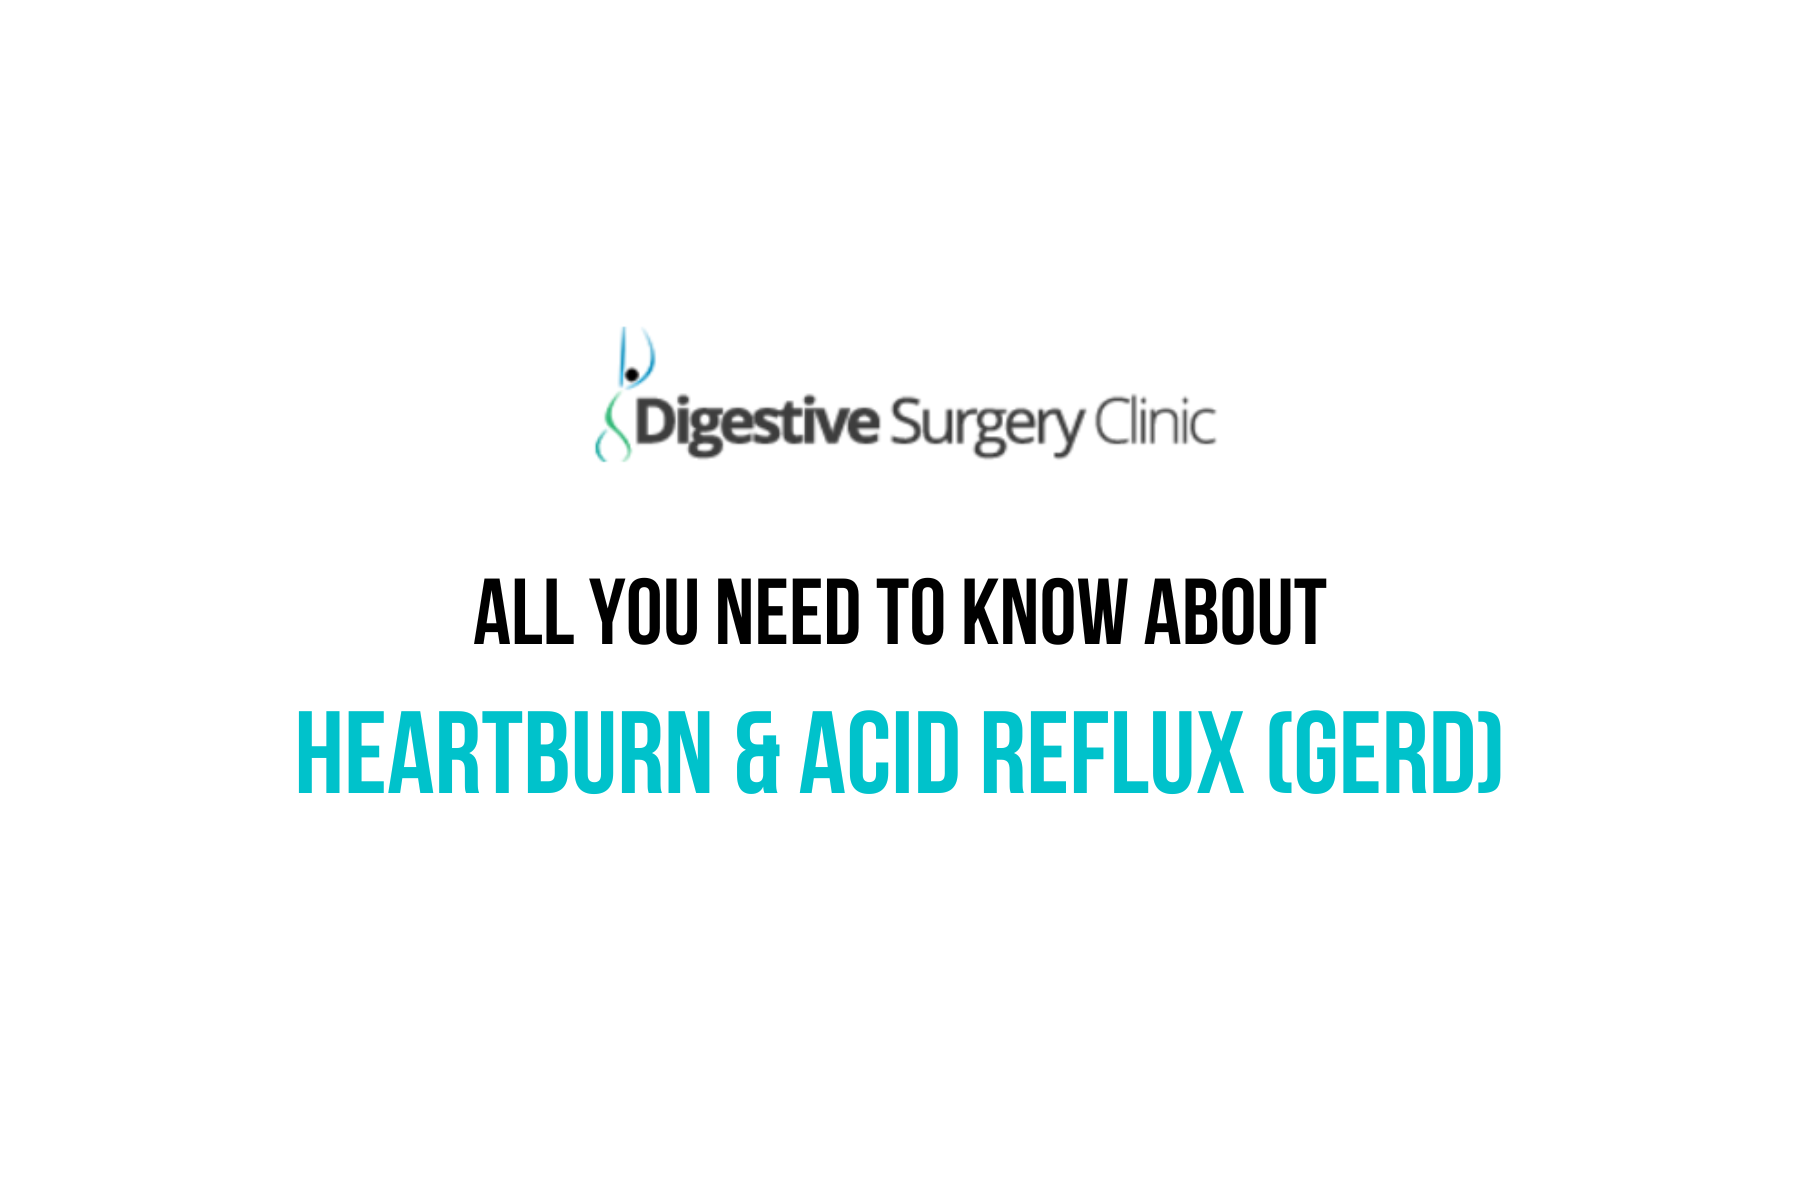 Heartburn & Acid Reflux (GERD)